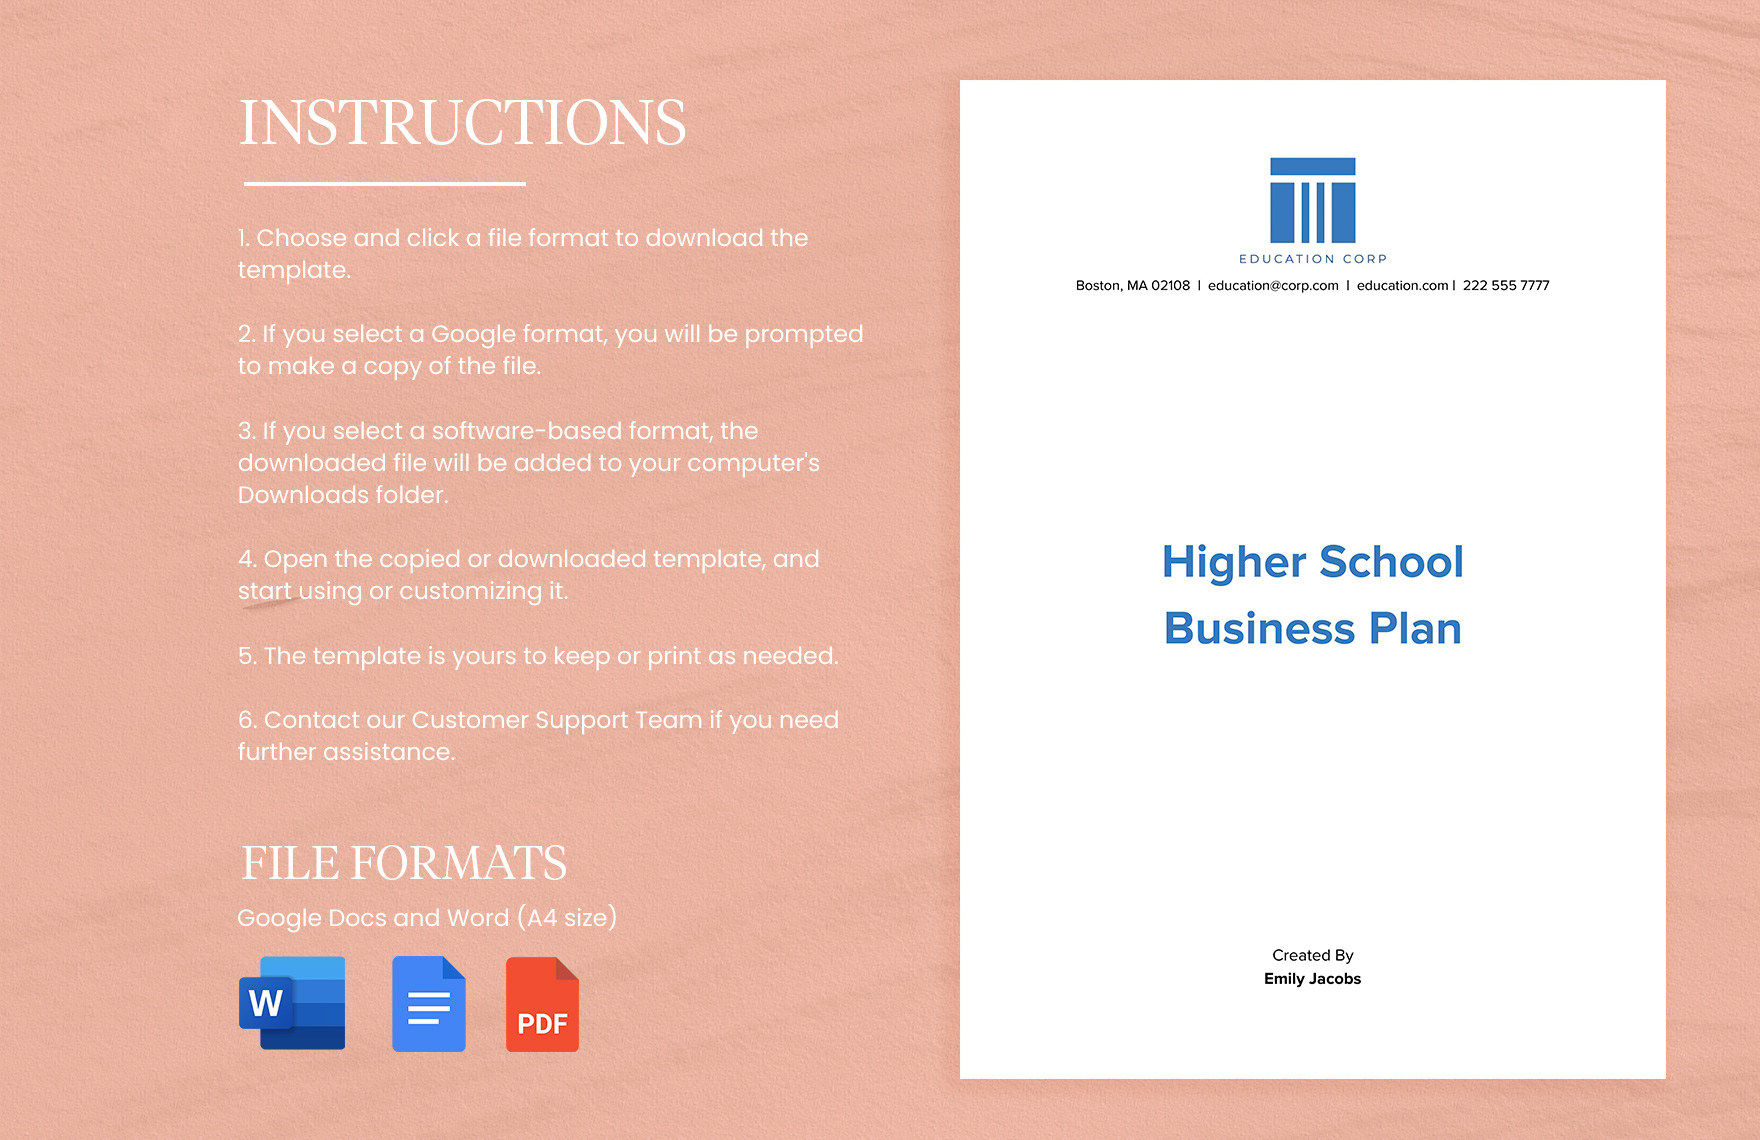 Higher School Business Plan Template